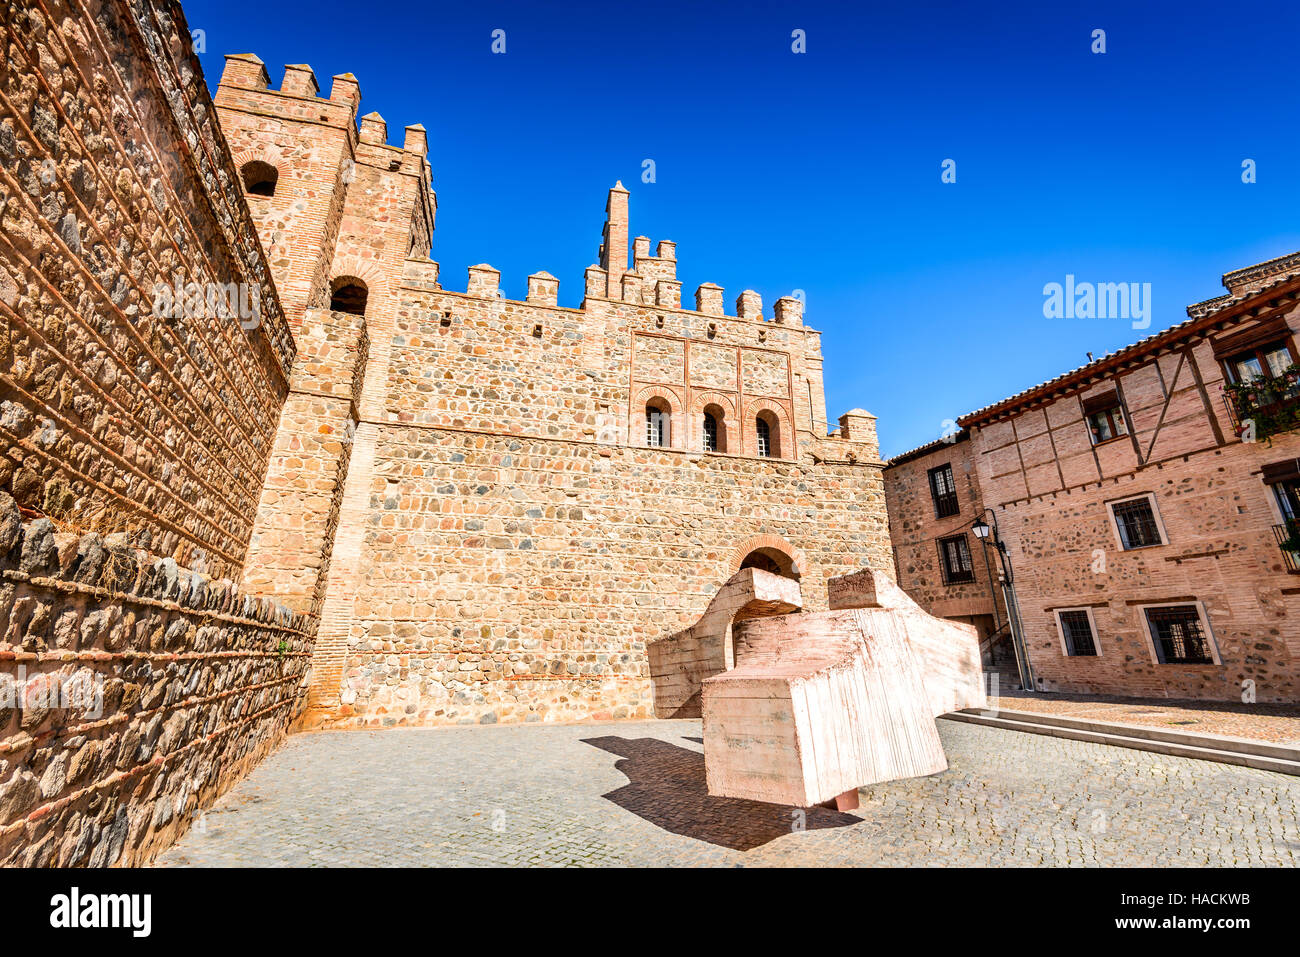 Toledo, Espagne. Puerta de Bisagra une porte de ville de ville espagnole médiévale construite par les Arabes au 10e siècle (à l'origine, Bab al-Saqra). Castille la Manche Banque D'Images